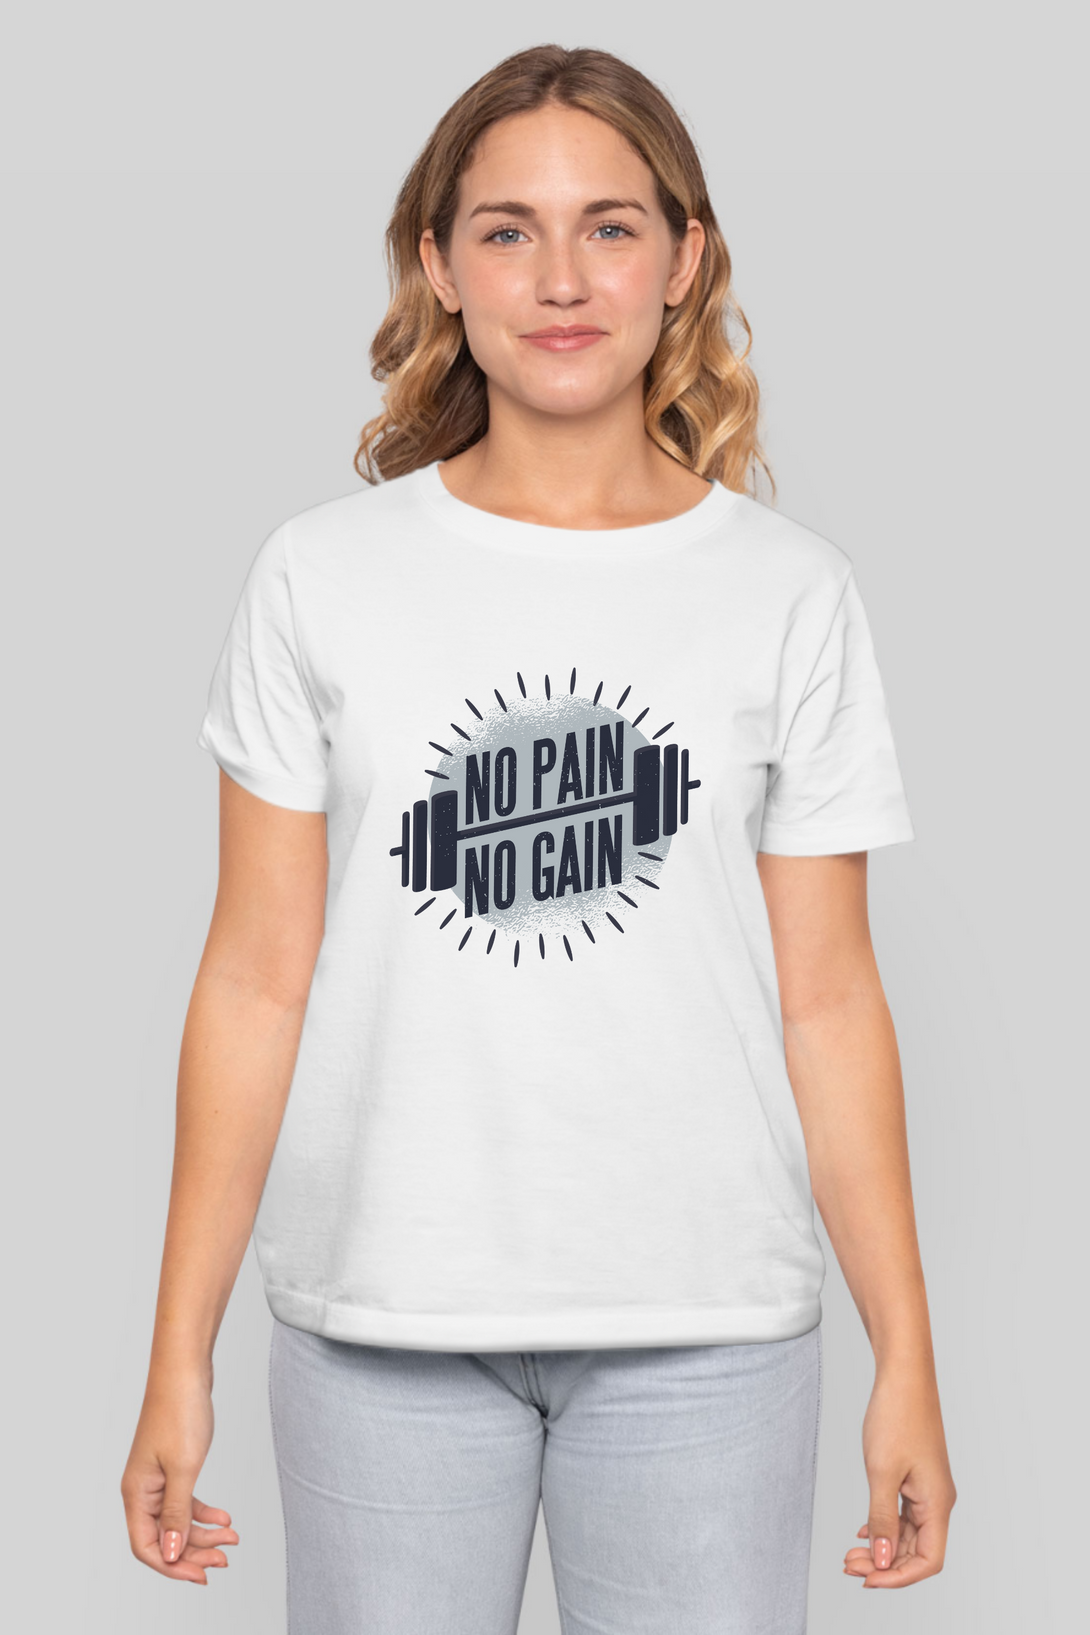 No Pain No Gain Printed T-Shirt For Women - WowWaves - 9